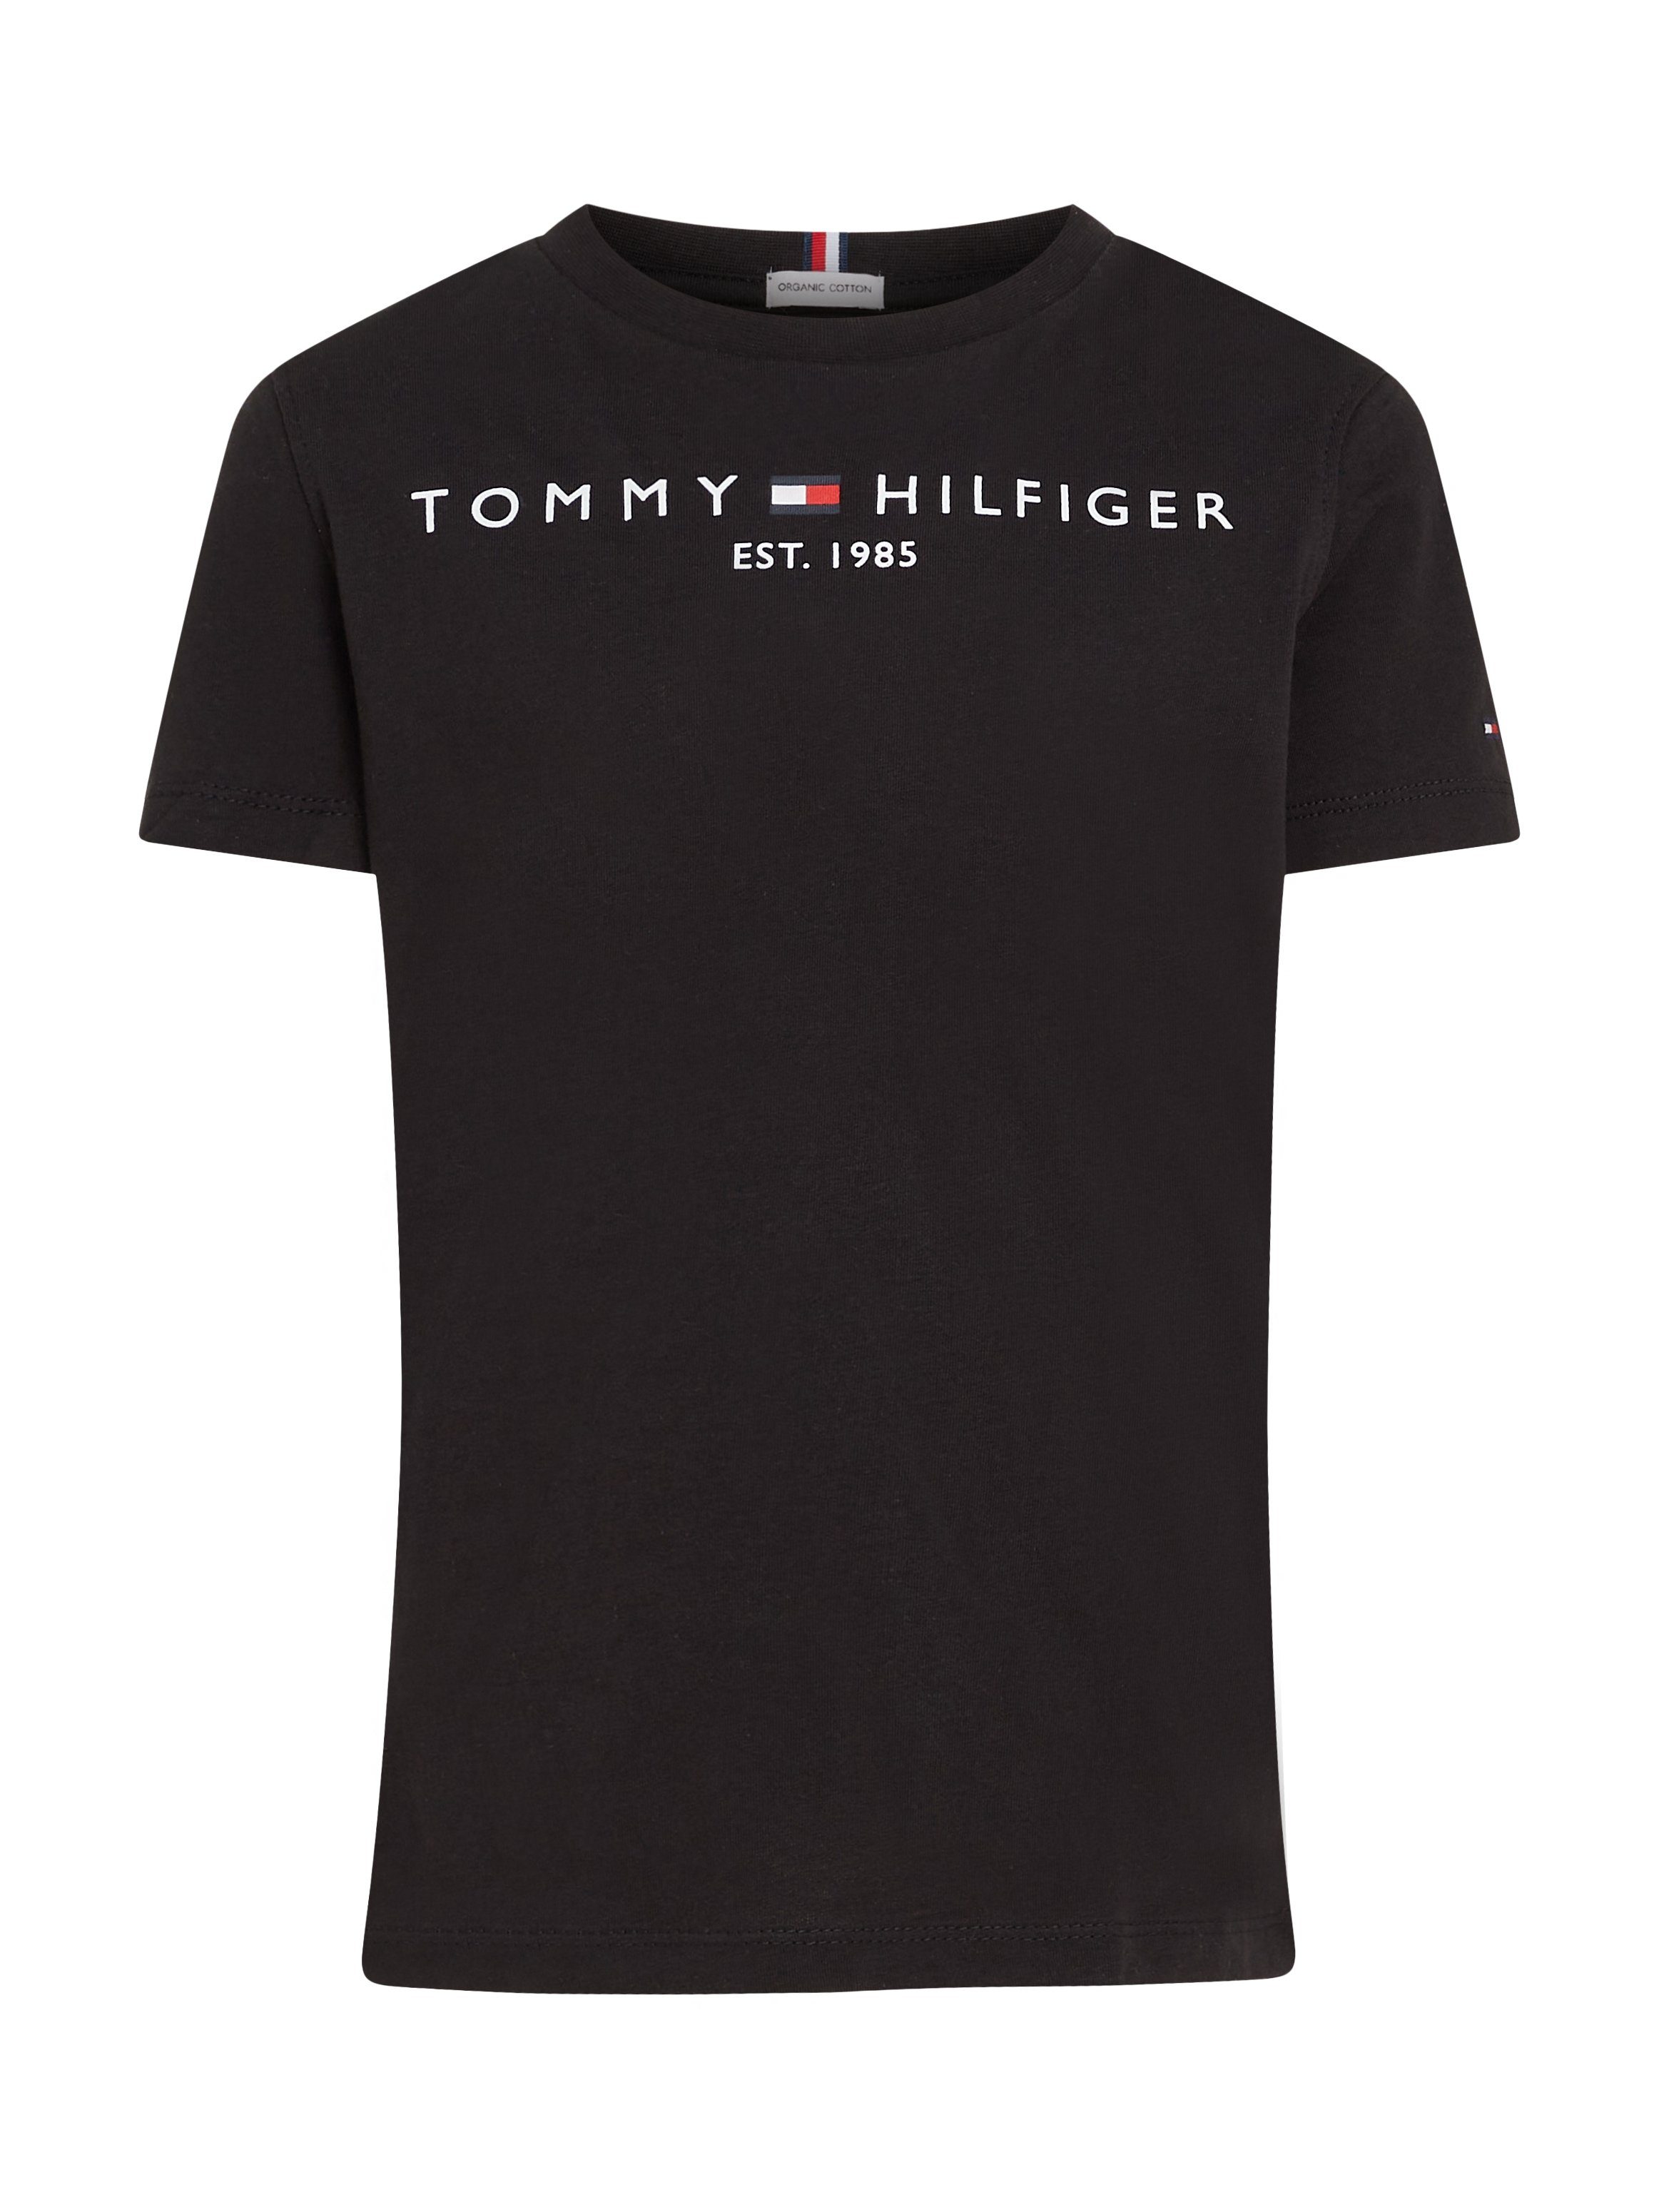 Tommy Hilfiger Jungen ESSENTIAL TEE und Mädchen für T-Shirt